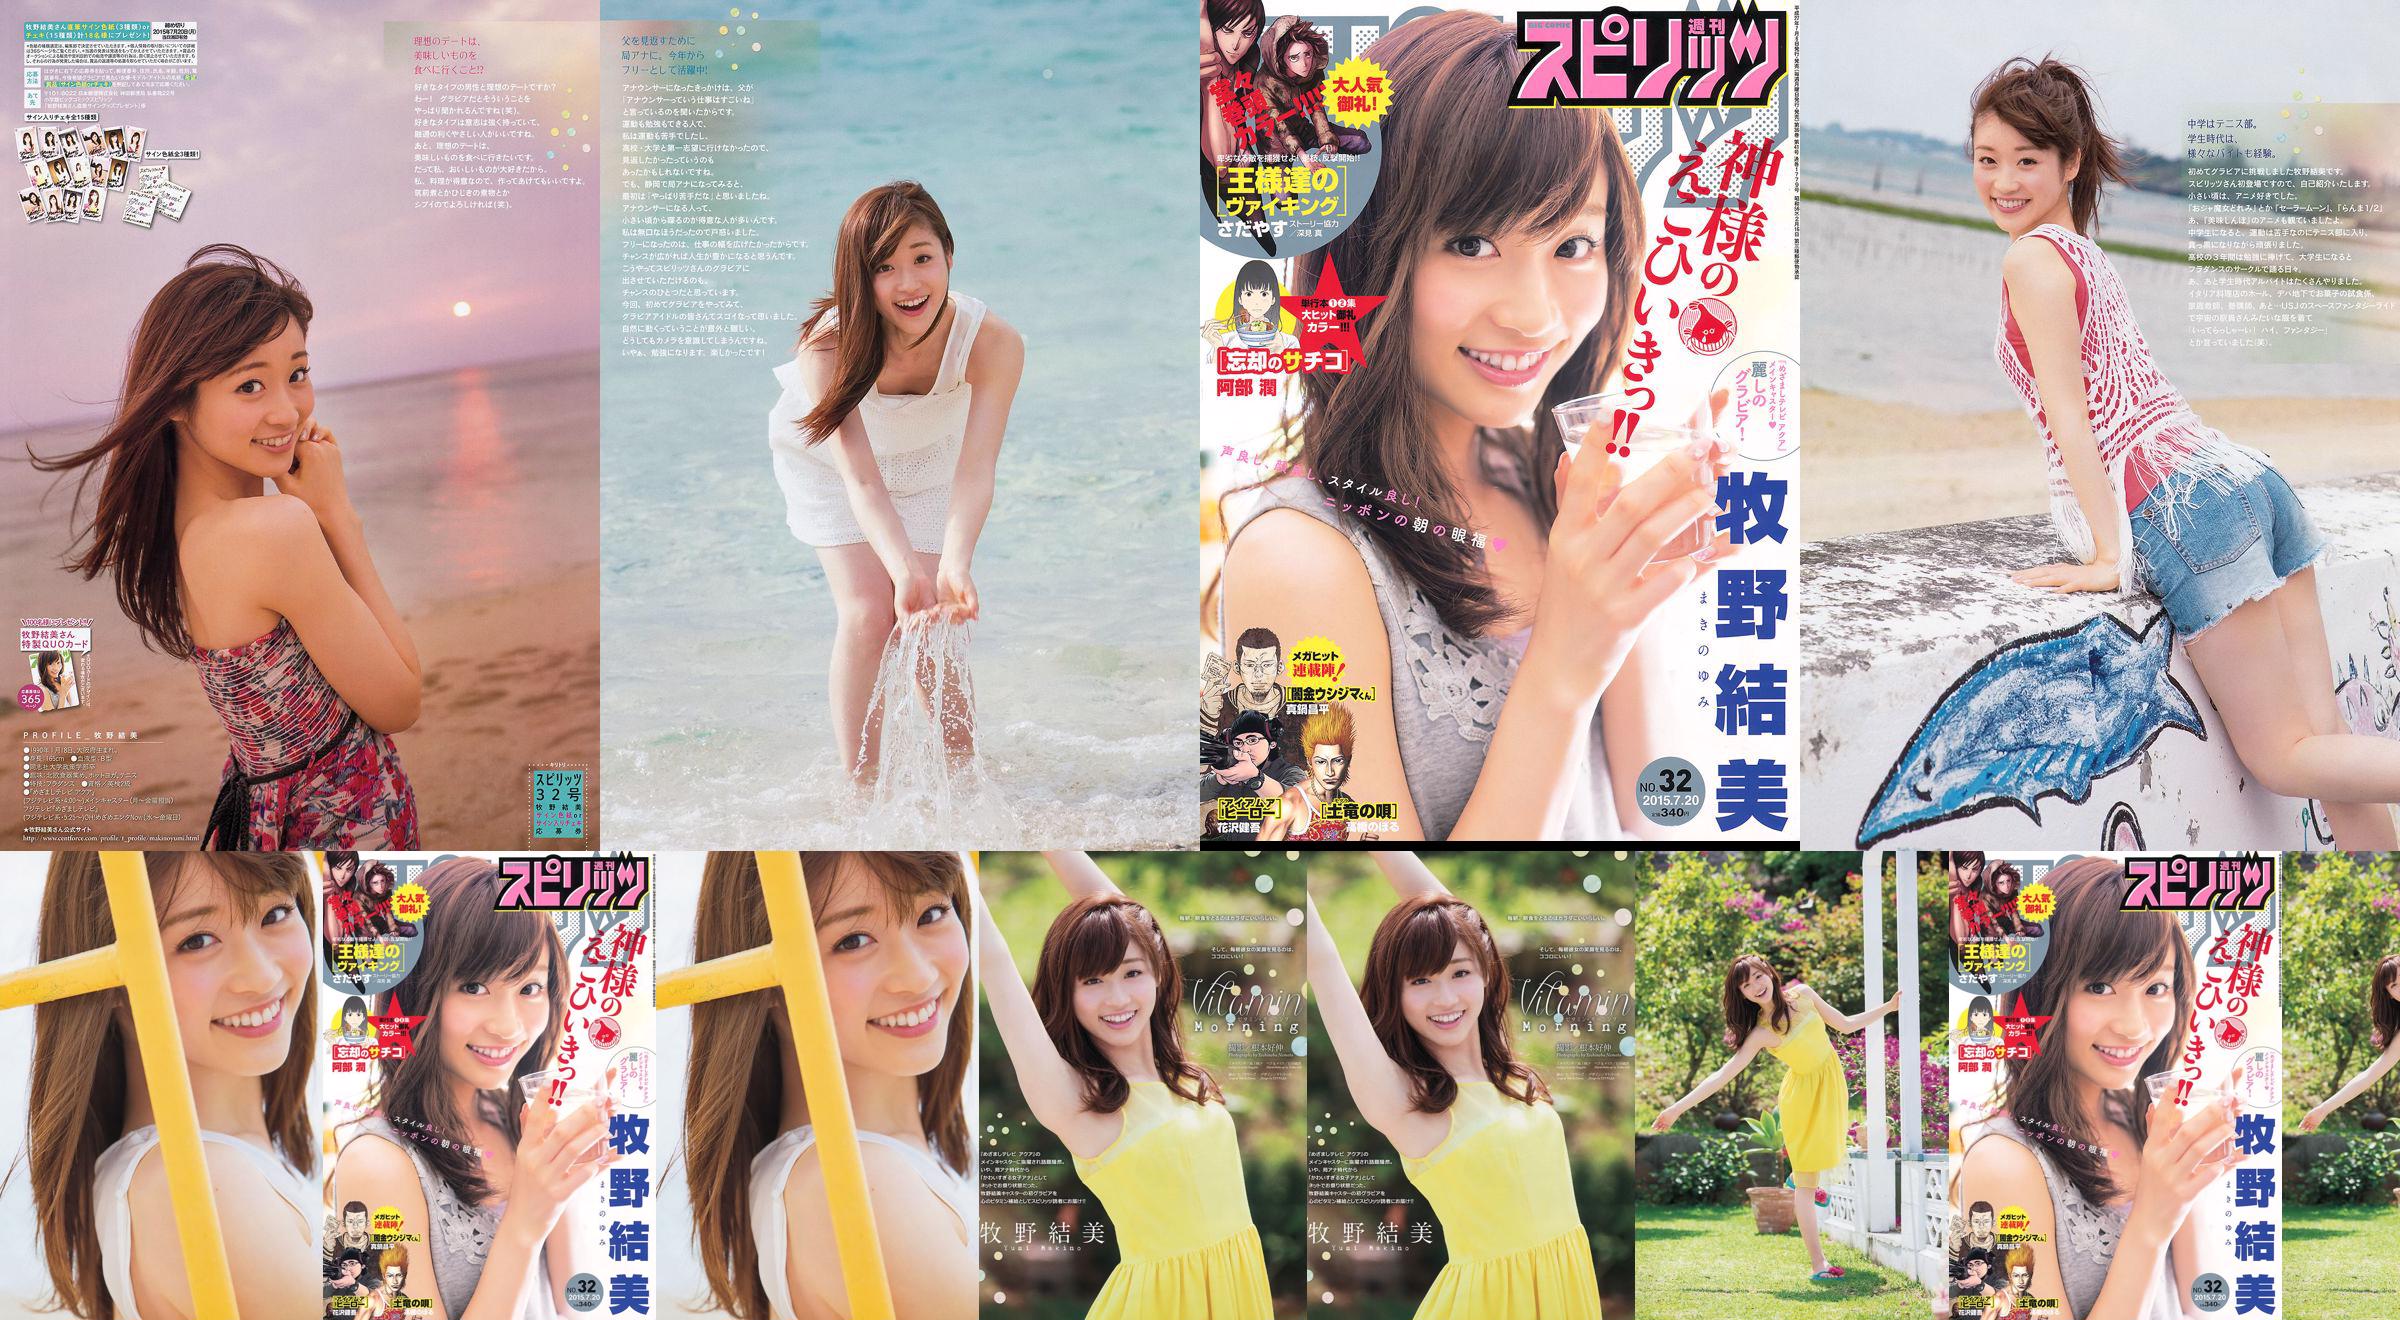 [Weekly Big Comic Spirits] Yumi Makino 2015 No.32 Photo Magazine No.4ba0de Página 2